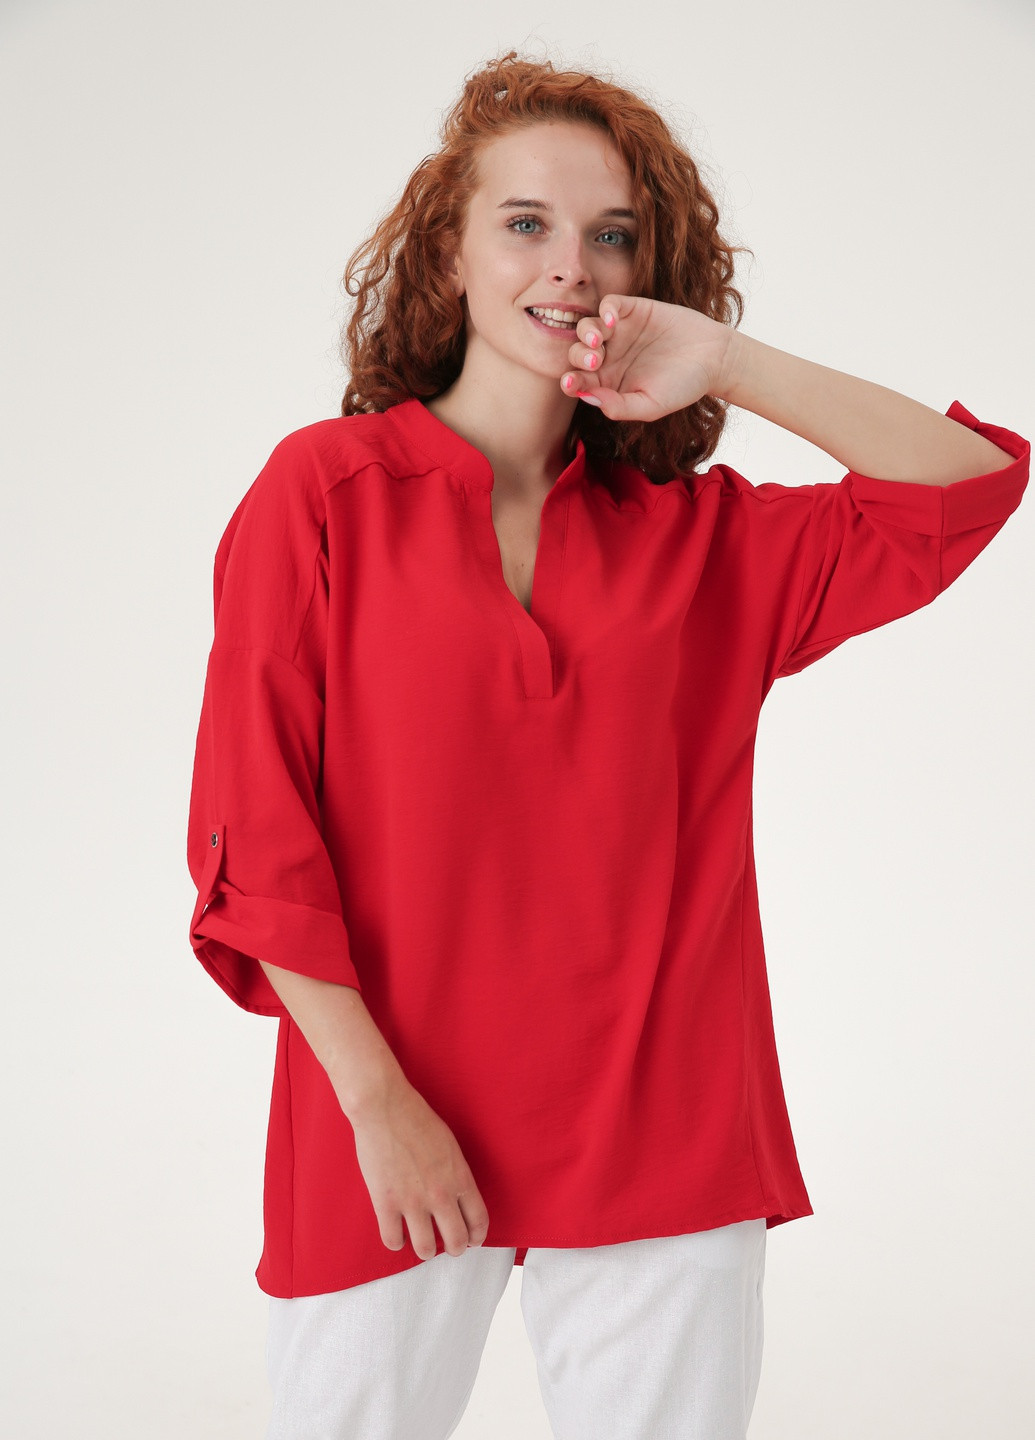 Красная демисезонная рубашка - туника из легкой вискозной жатки, оригинального кроя INNOE блуза зі спущеною лінією плеча